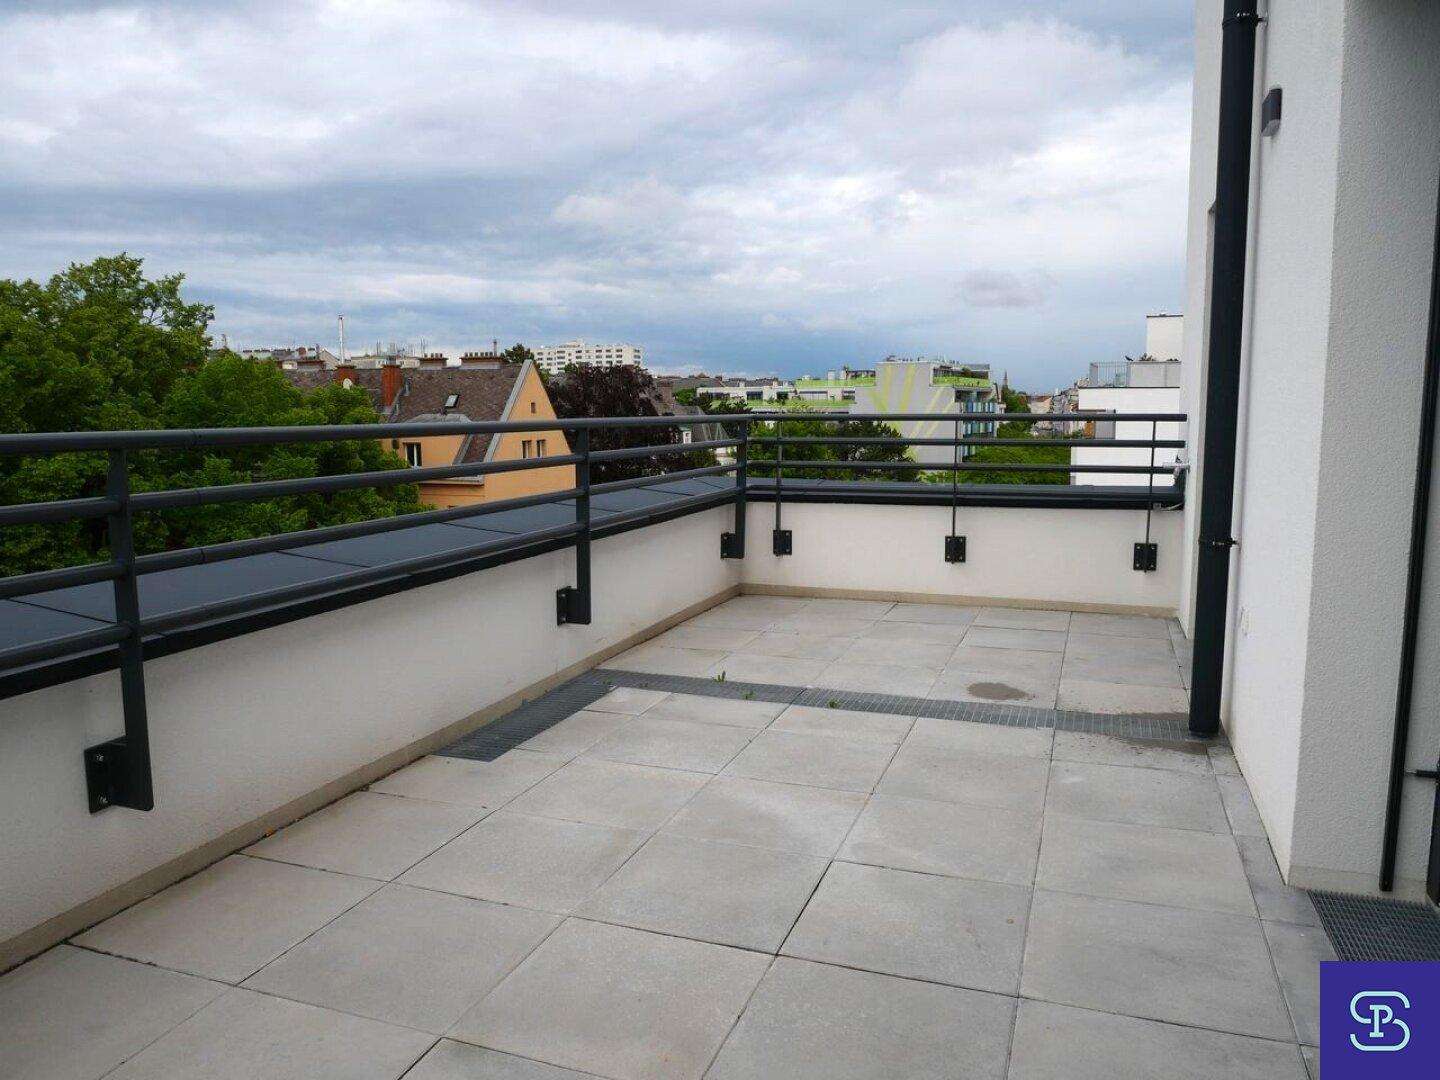 Provisionsfrei: 38m² DG-Erstbezug + 17m² Terrasse mit Einbauküche - 1140 Wien